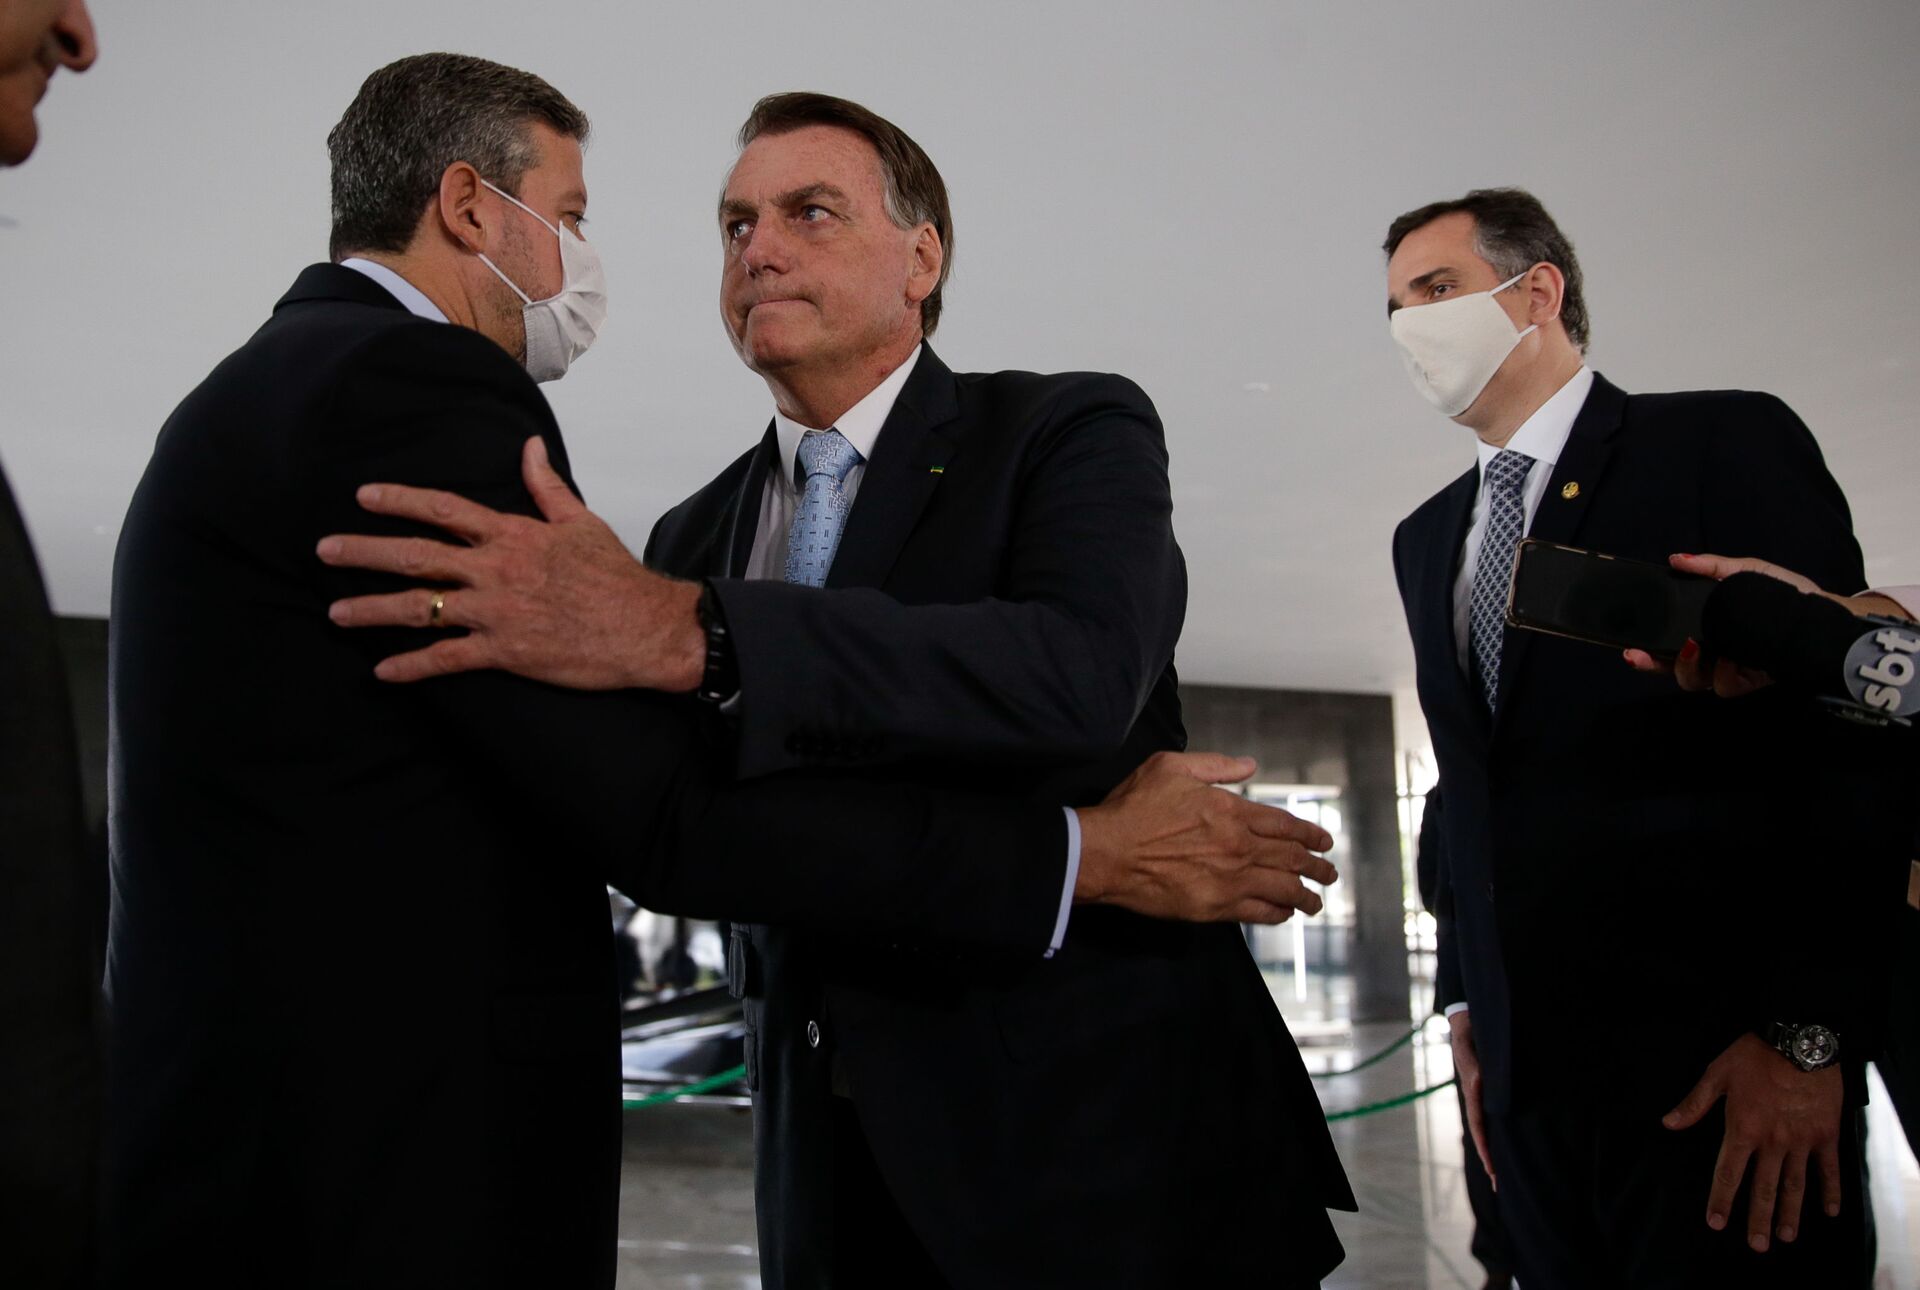 Centrão quer dificultar ações de Bolsonaro na Câmara após revés em escolha de ministro, diz jornal - Sputnik Brasil, 1920, 17.03.2021